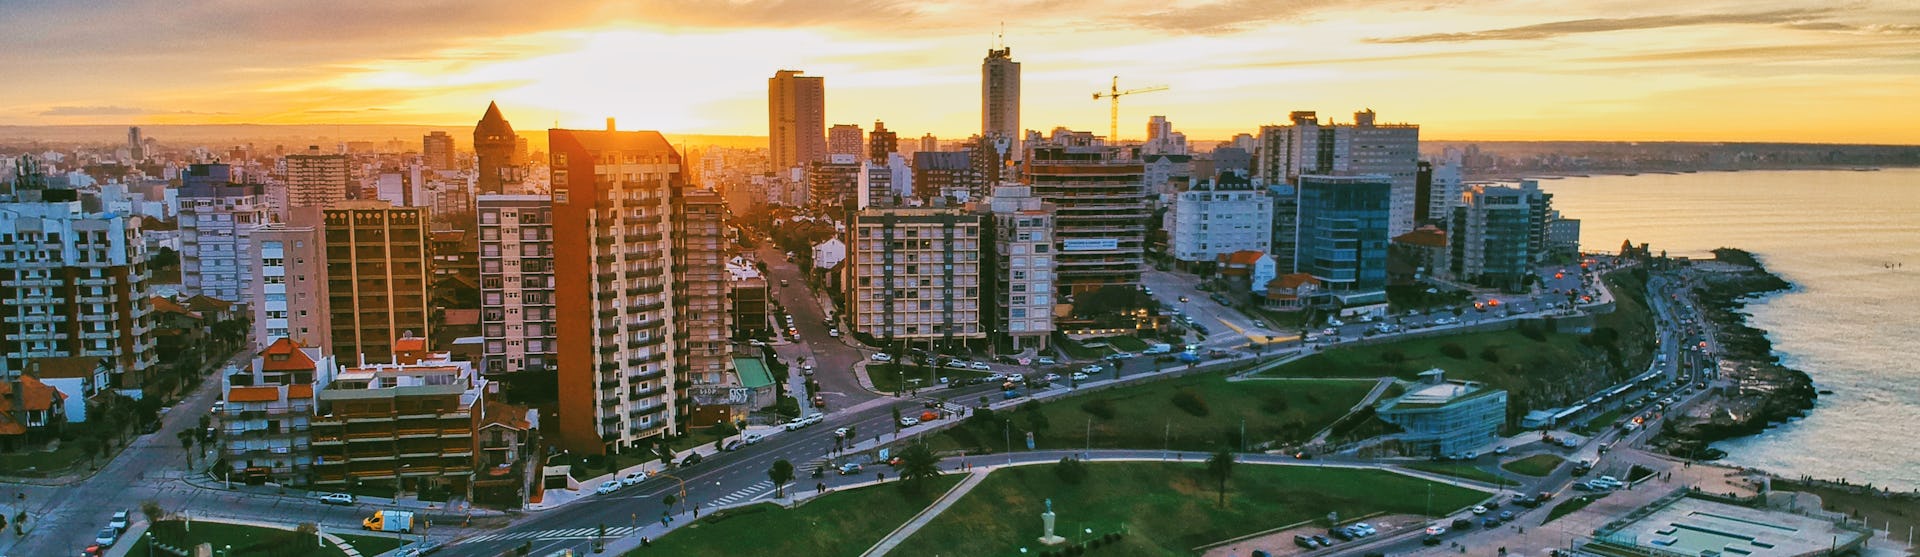 Bild på Buenos Aires kustlinje i solnedgången med byggnader till vänster och havet till höger.